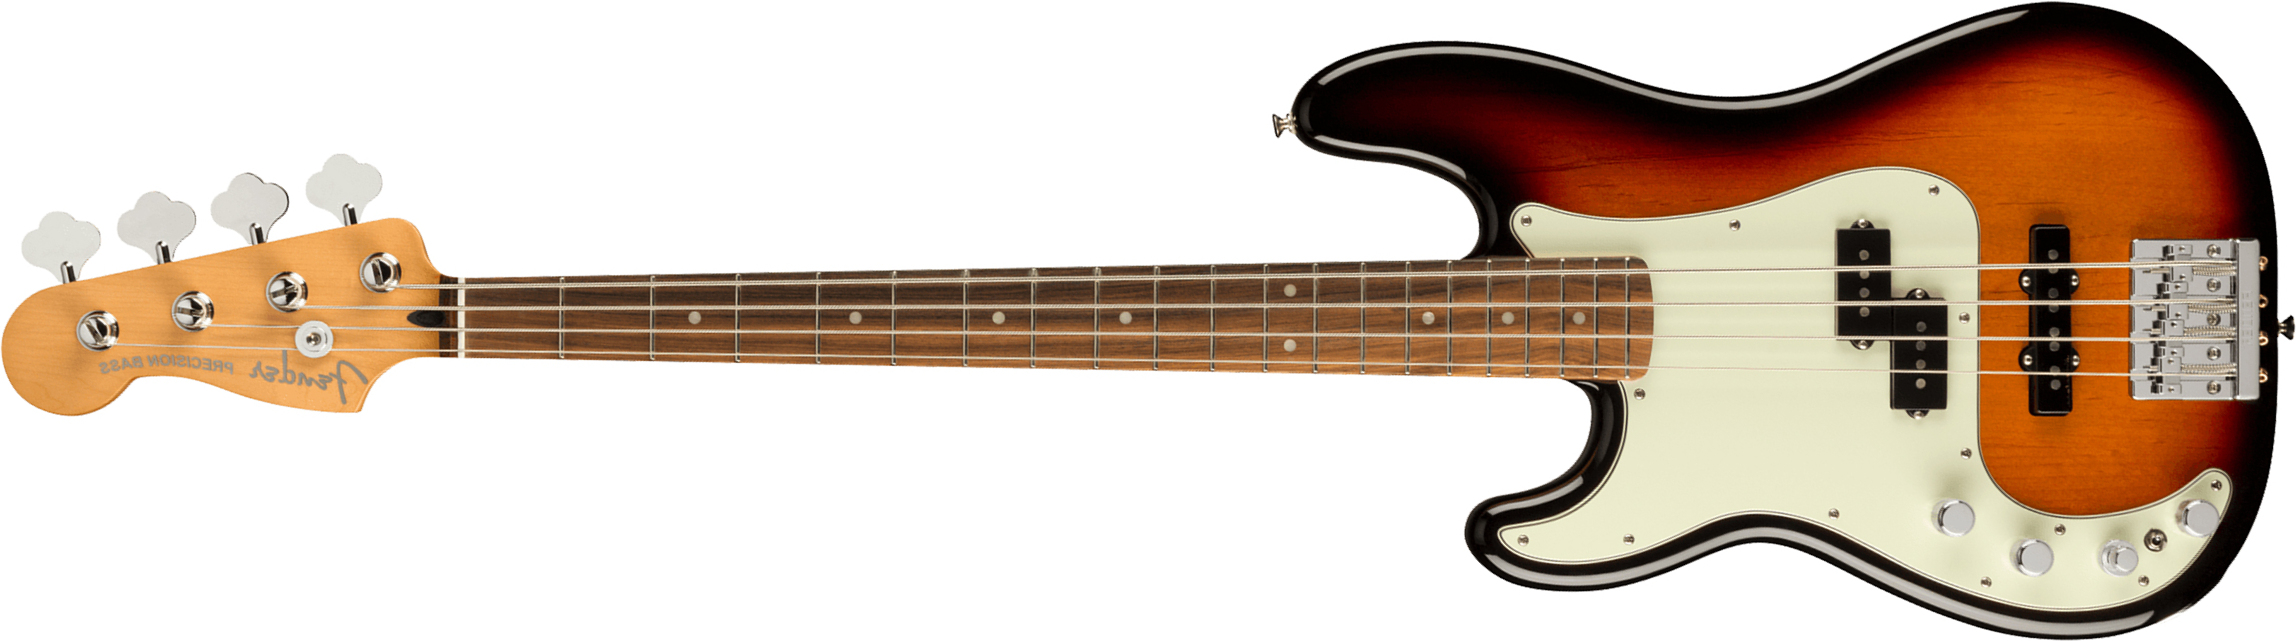 Fender Precision Bass Player Plus Lh Mex Gaucher Active Pf - 3-color Sunburst - Basse Électrique Solid Body - Main picture